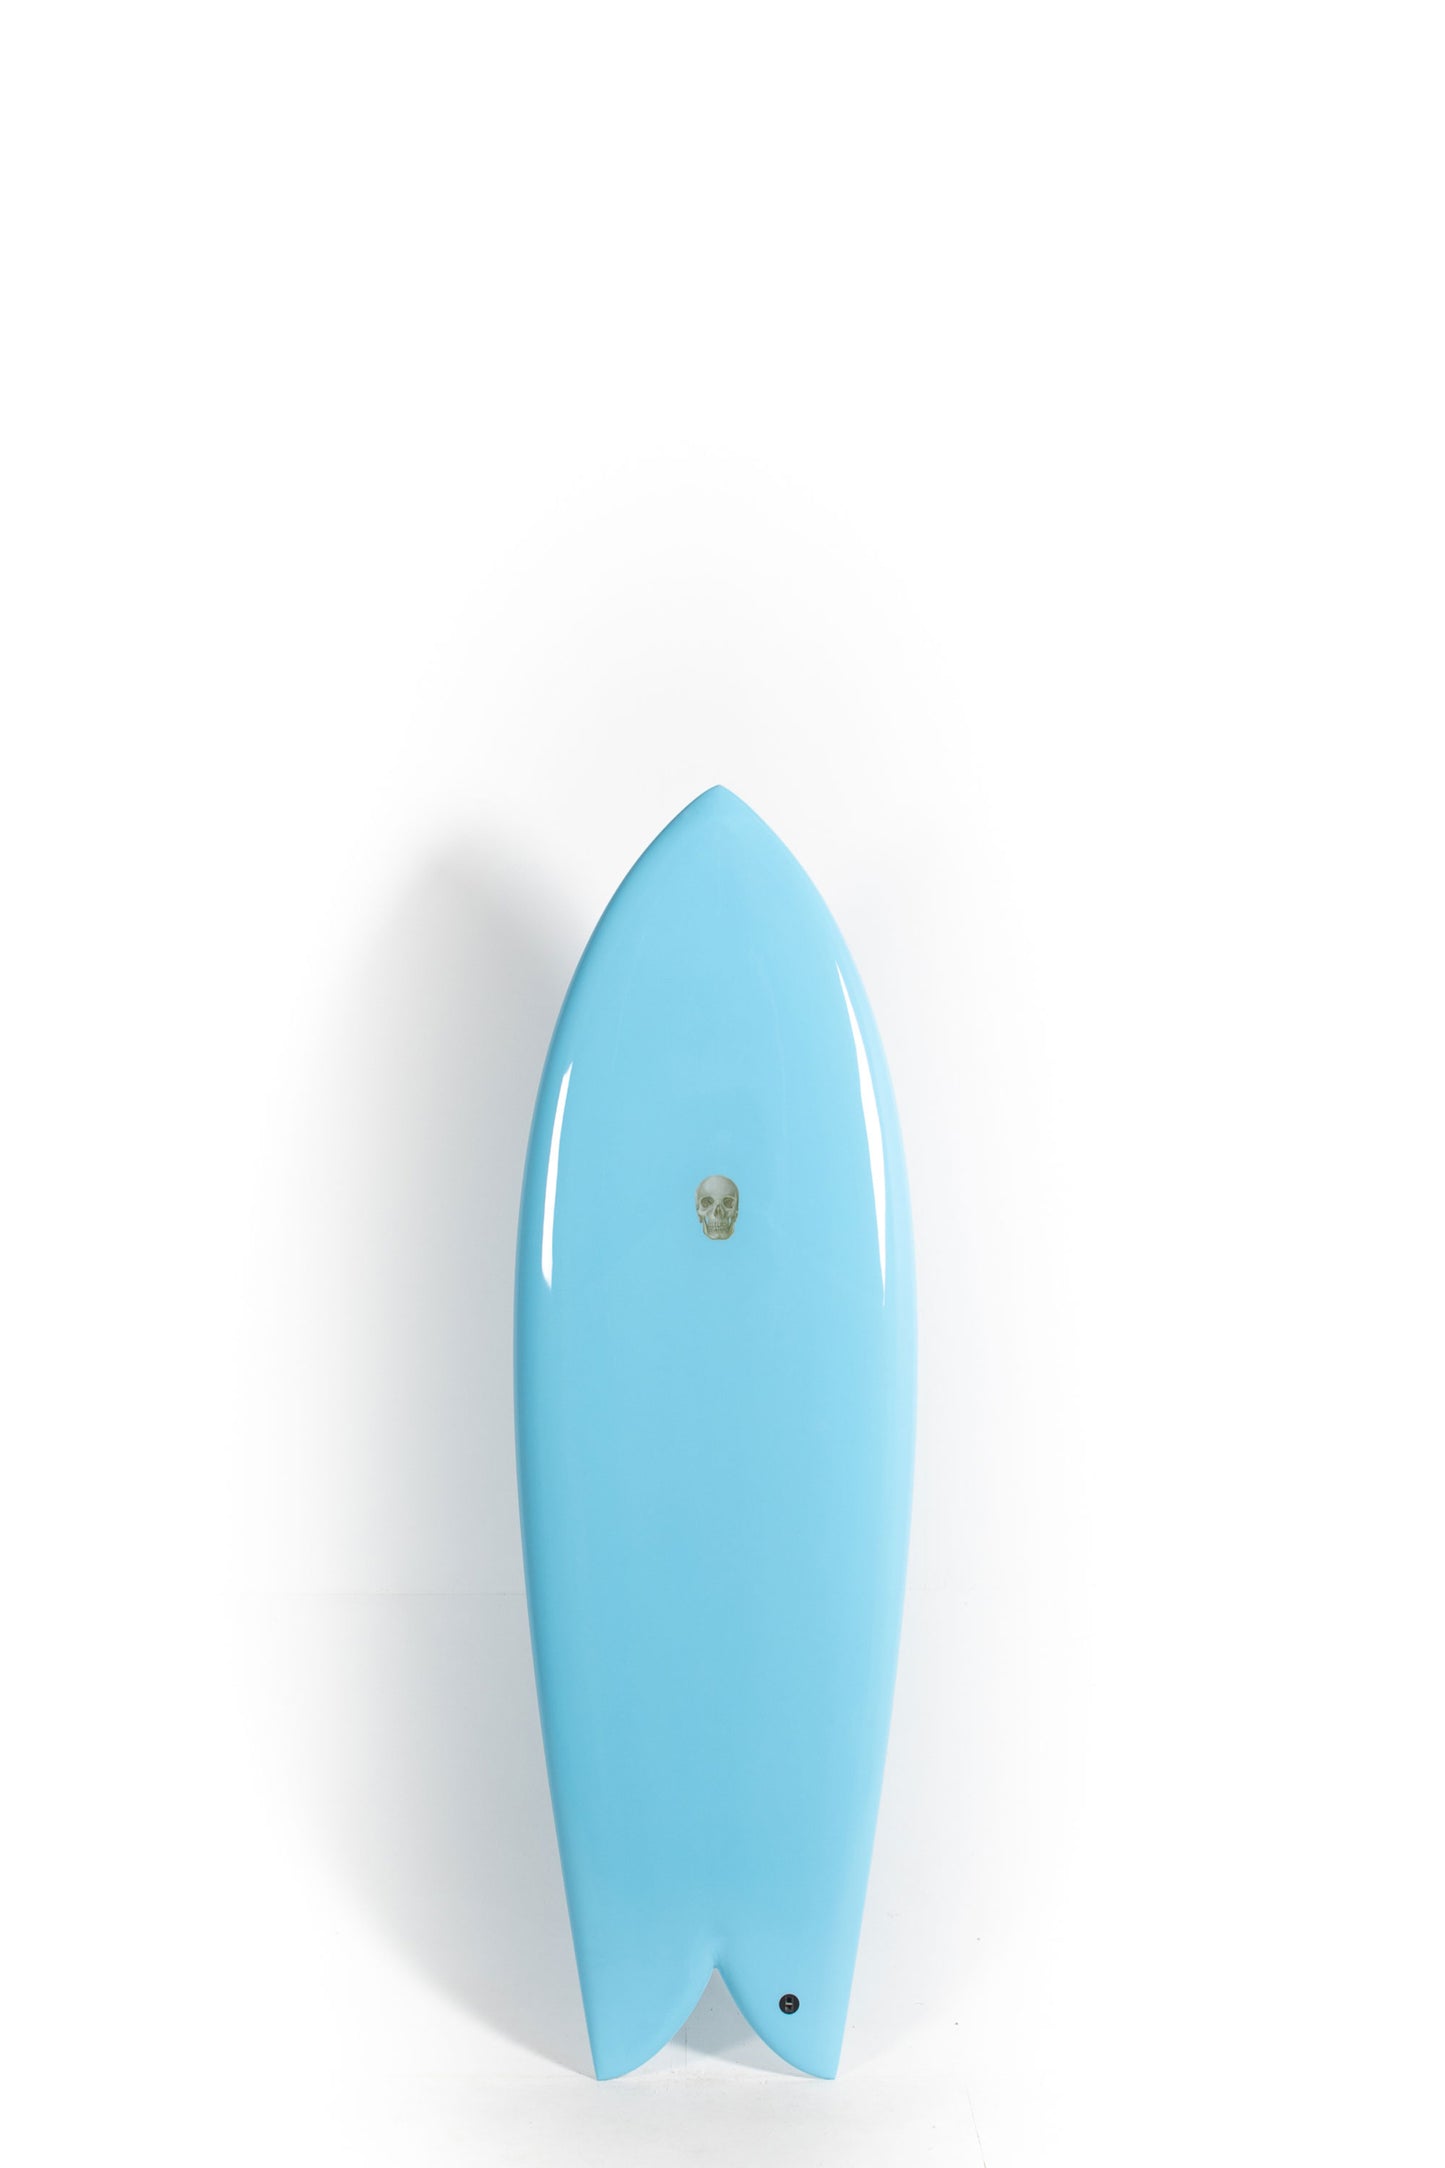 Pukas Surf Shop - Christenson Surfboards - CHRIS FISH - 5'7" x 21 x 2 7/16 -CX04070